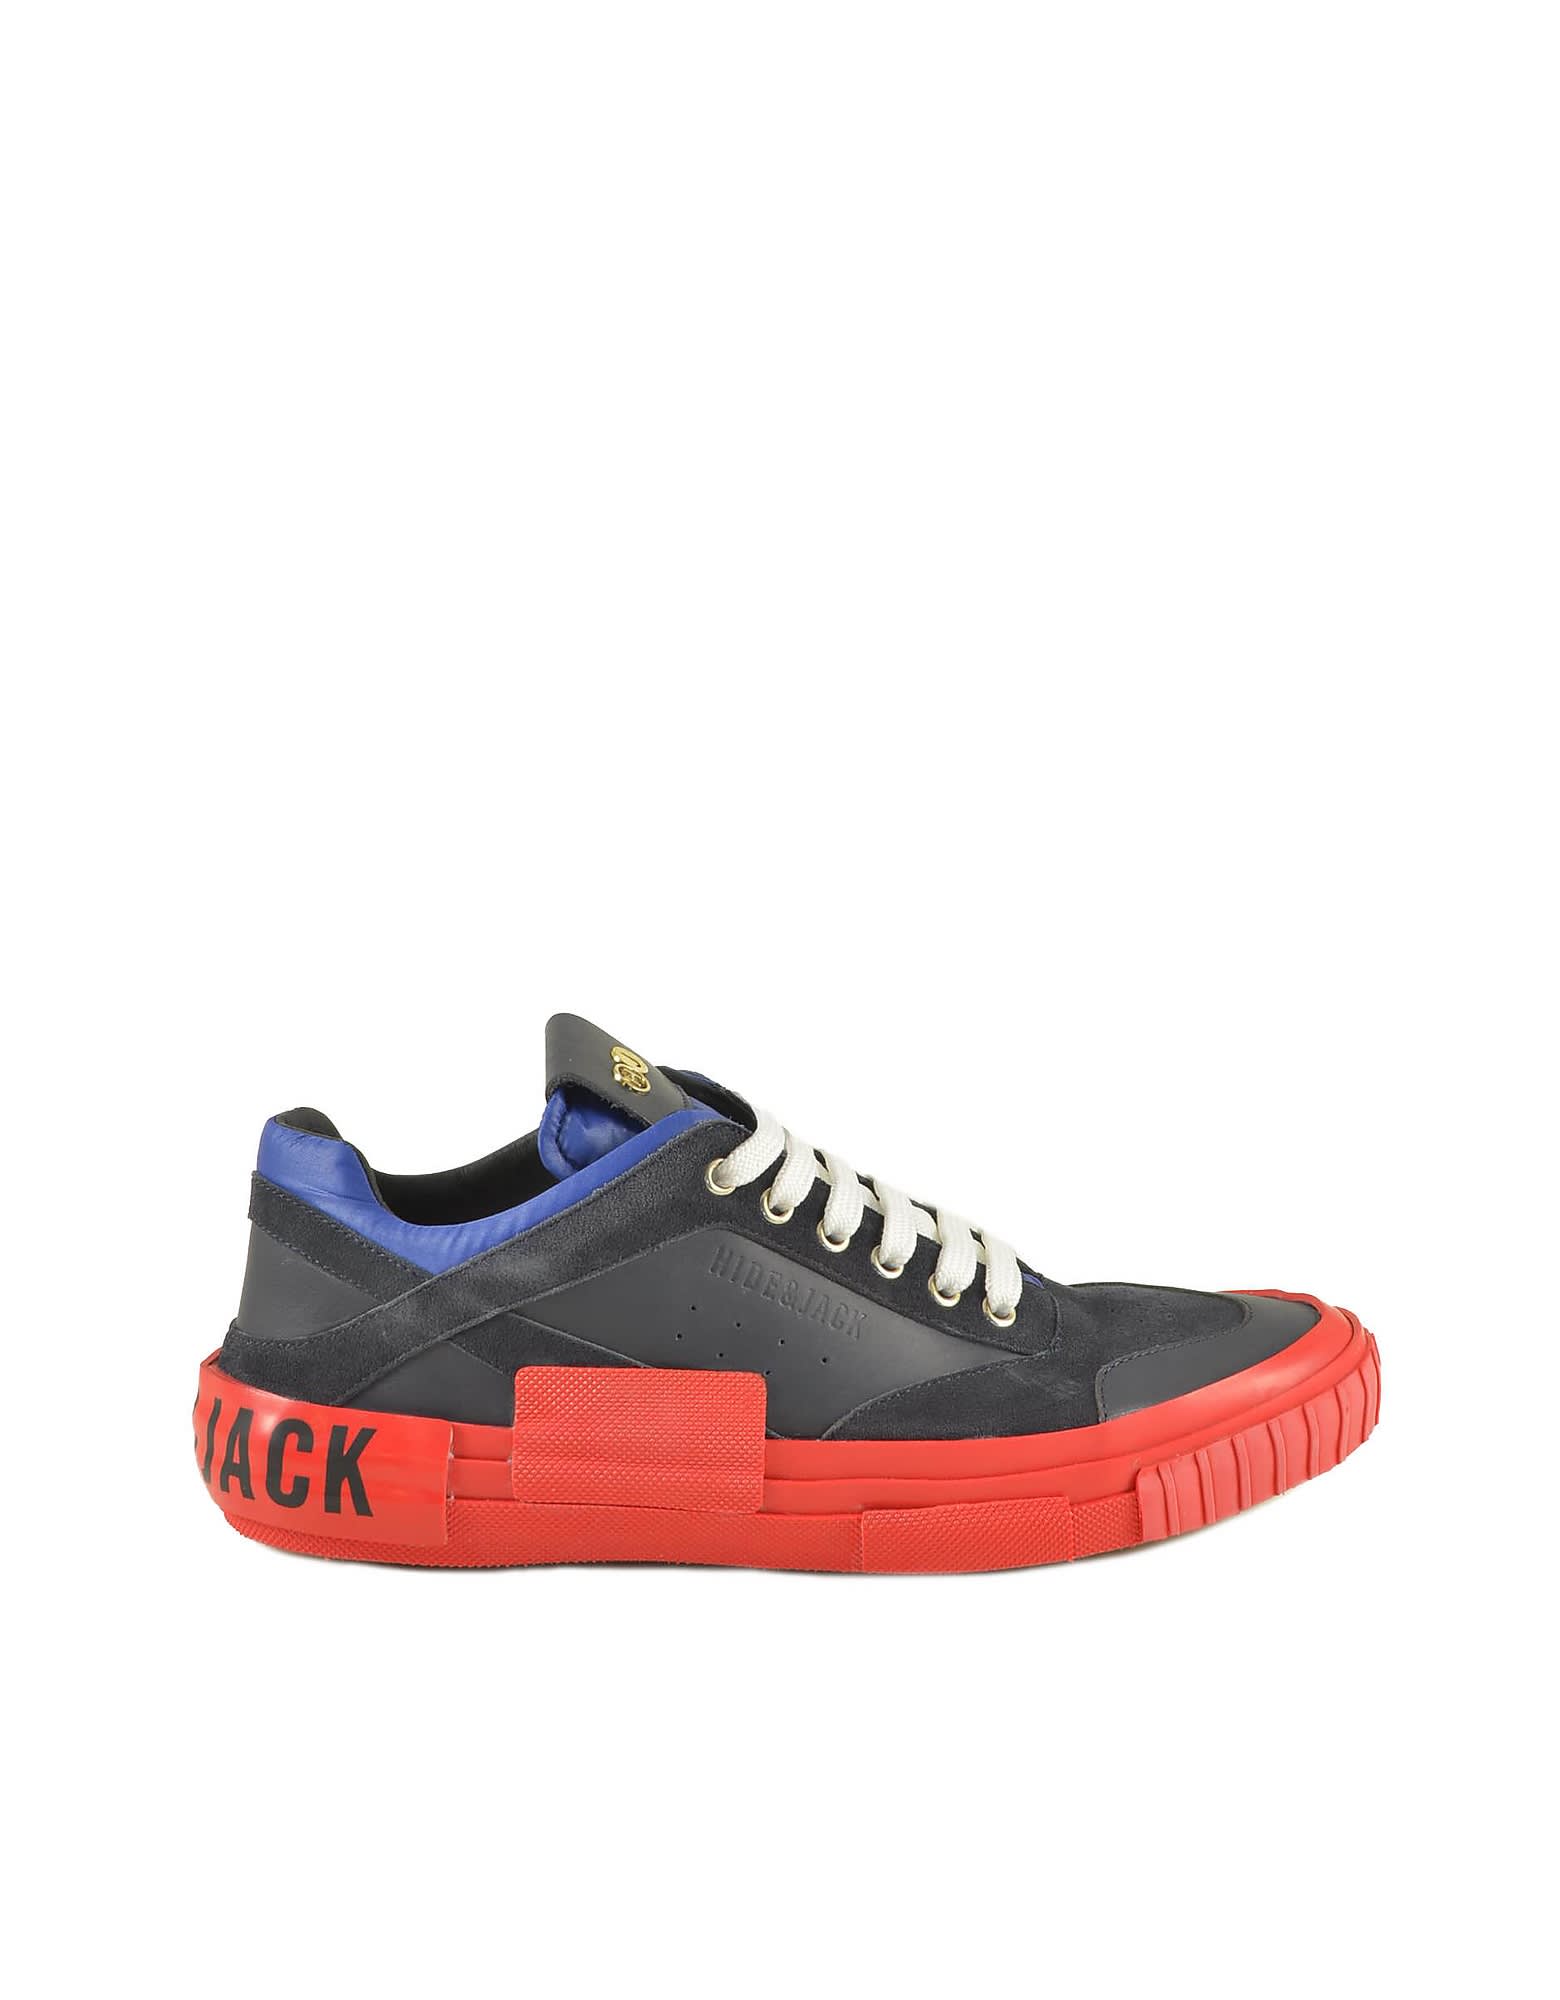 Hide & Jack Mens Red Blue Sneakers